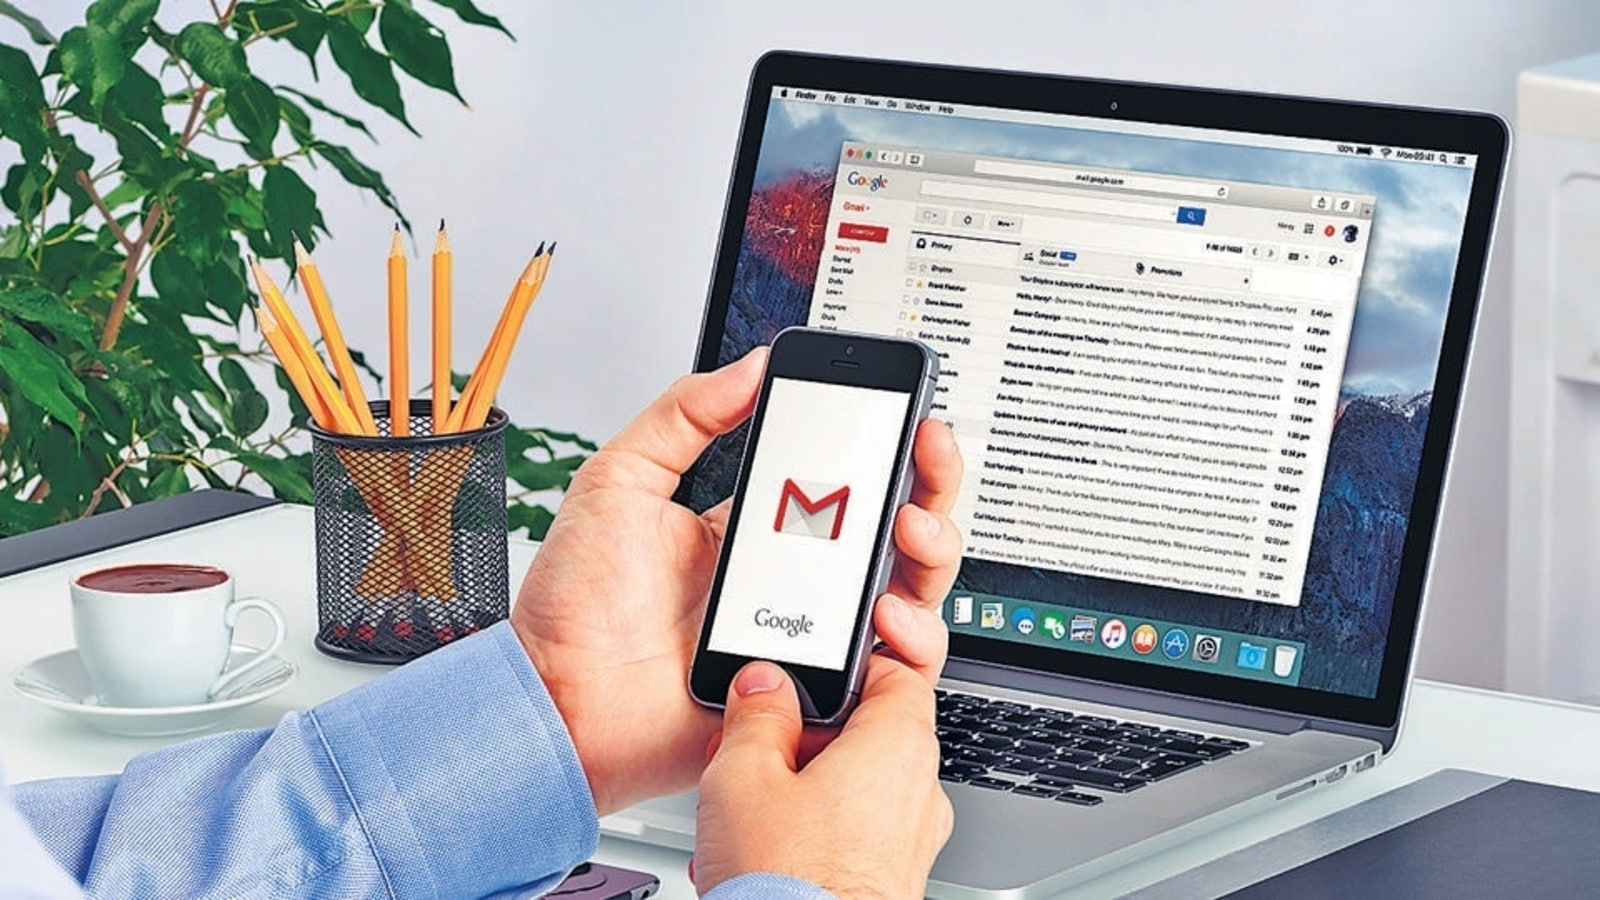 Apa kata sandi aplikasi Gmail dan bagaimana cara membuatnya?